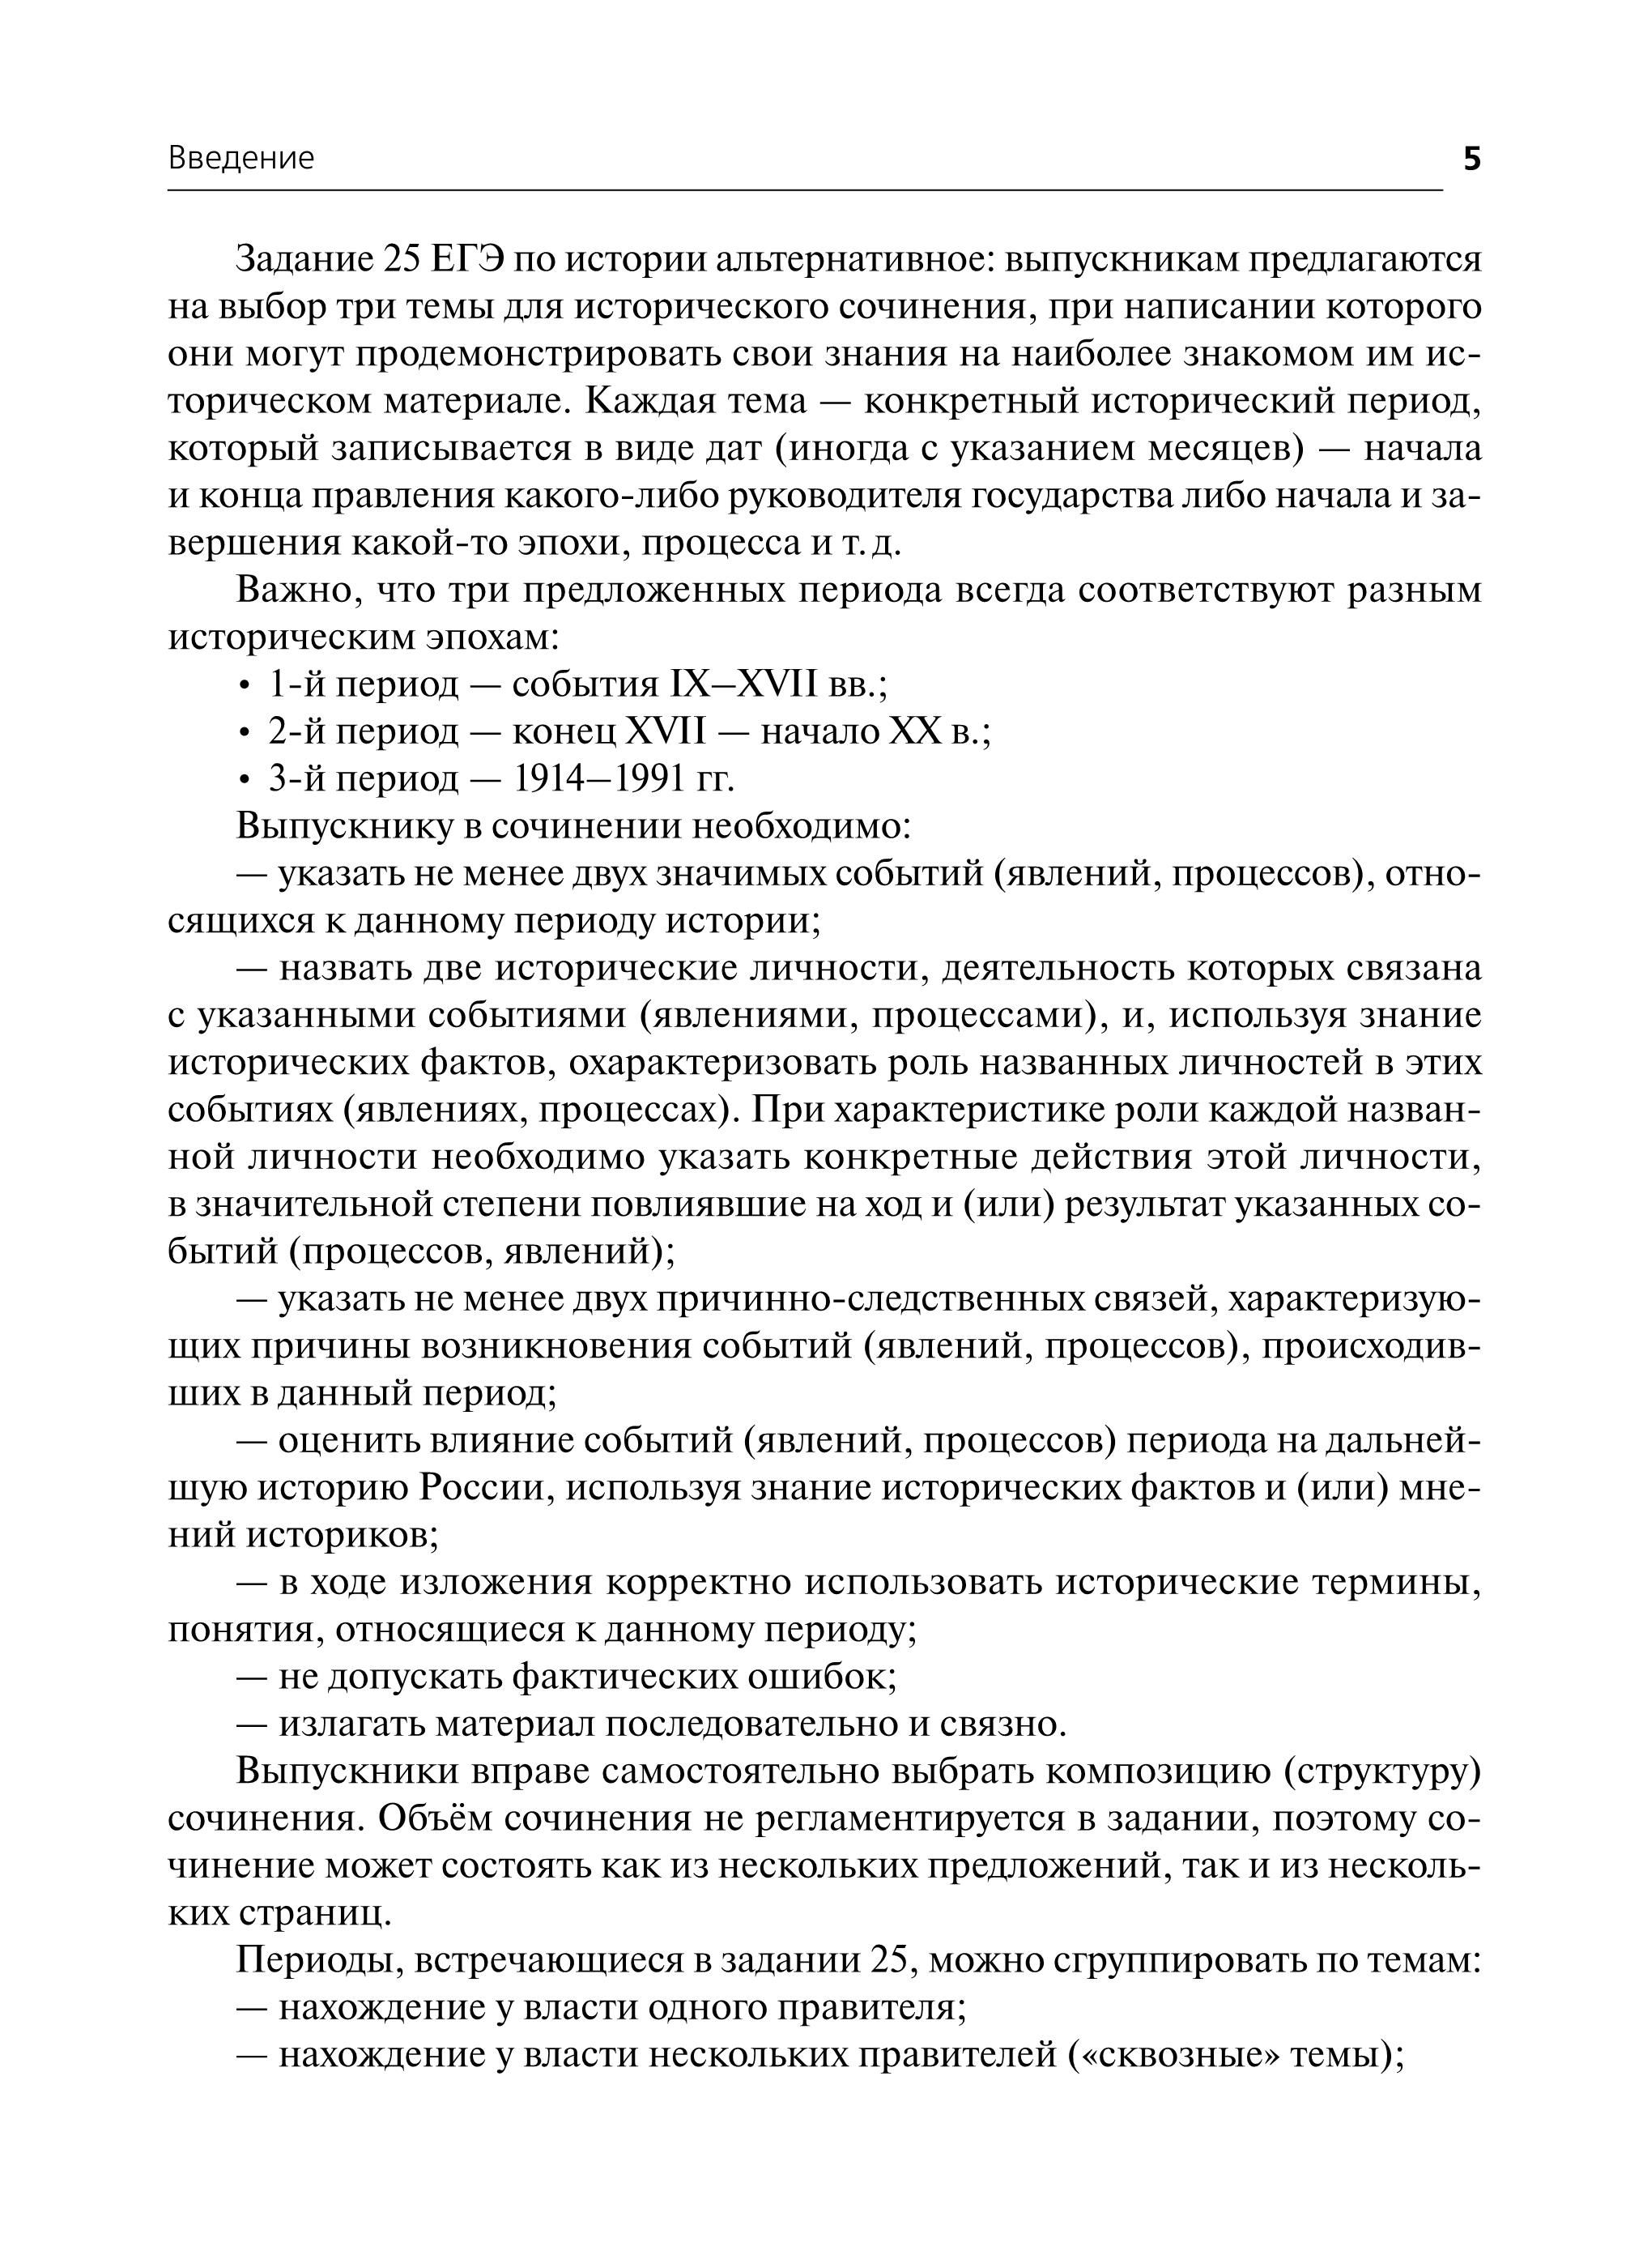 История. ЕГЭ. Историческое сочинение. Тетрадь-тренажер. 3-е изд.